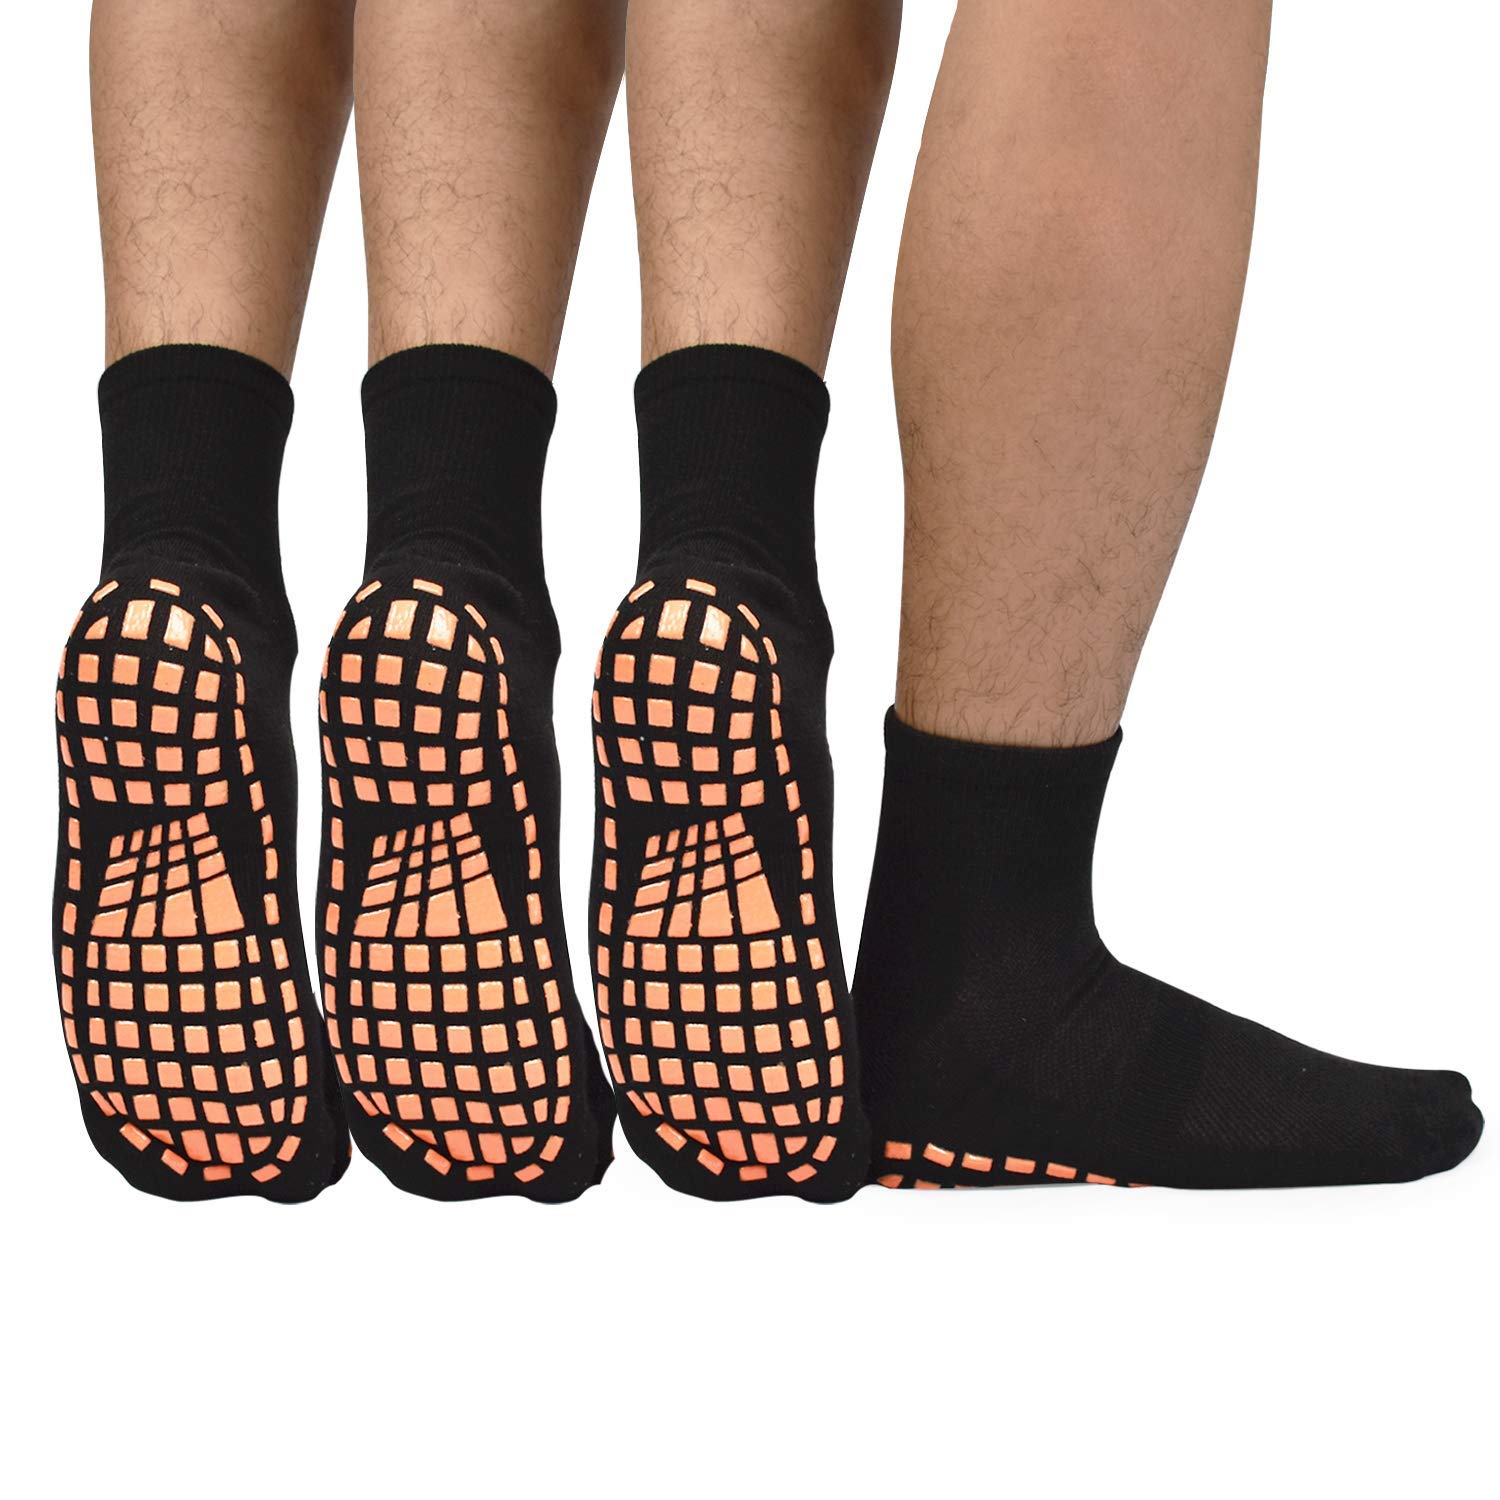 1-6Pair Anti Slip Non Skid Slipper Hospital Socks with grips For Adult Men  Women